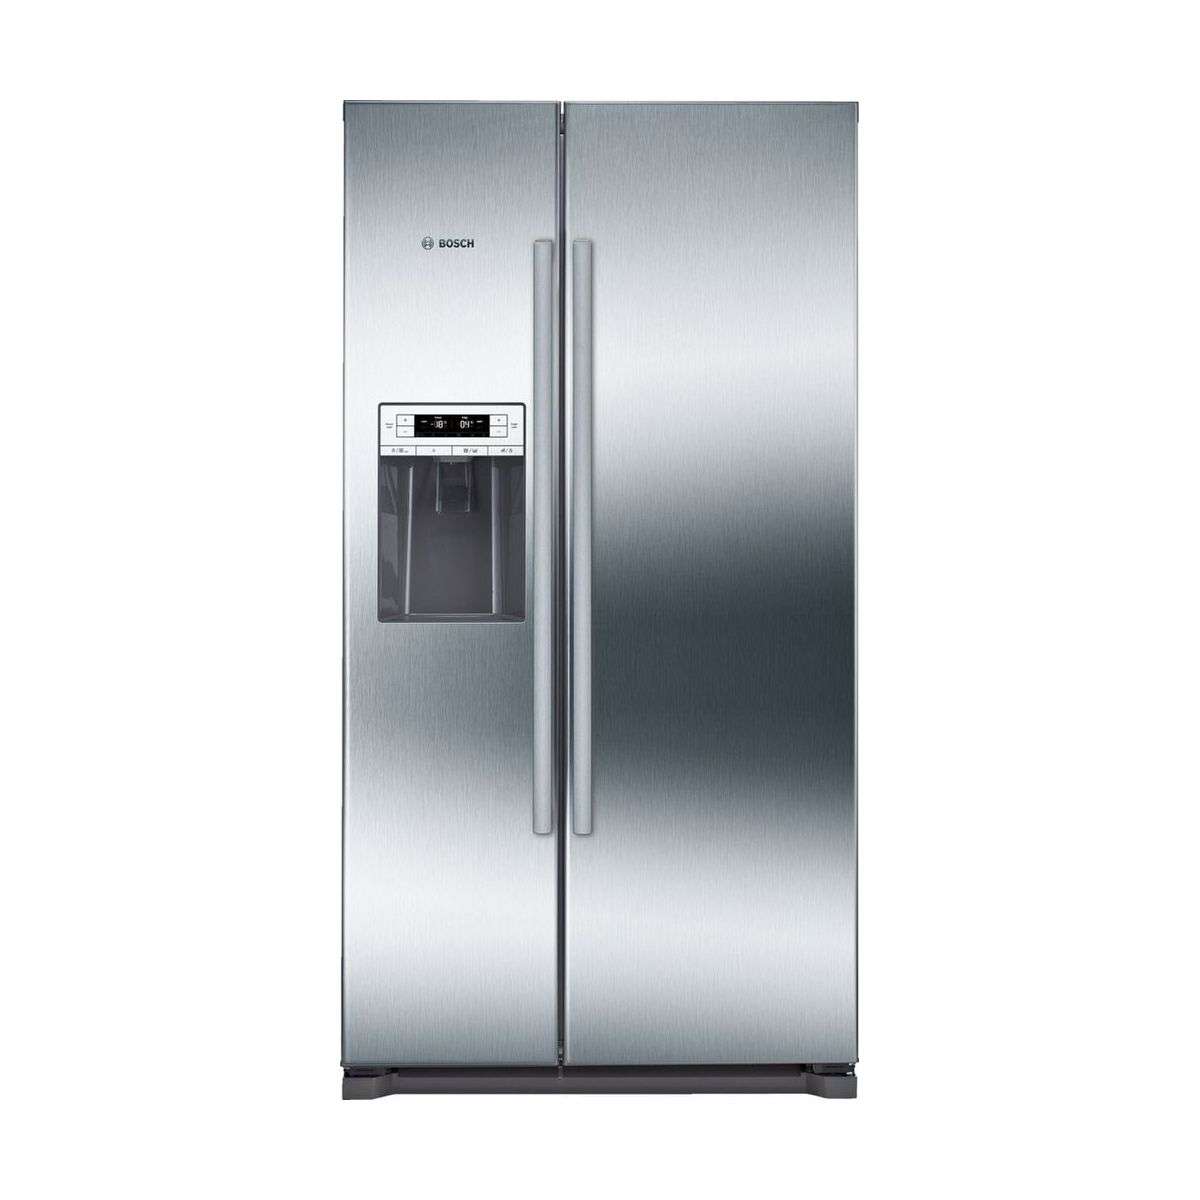 Tủ lạnh Bosch KAD90VI20 được thiết kế theo tiêu chuẩn châu Âu màu sáng trắng với kích thước khá lớn